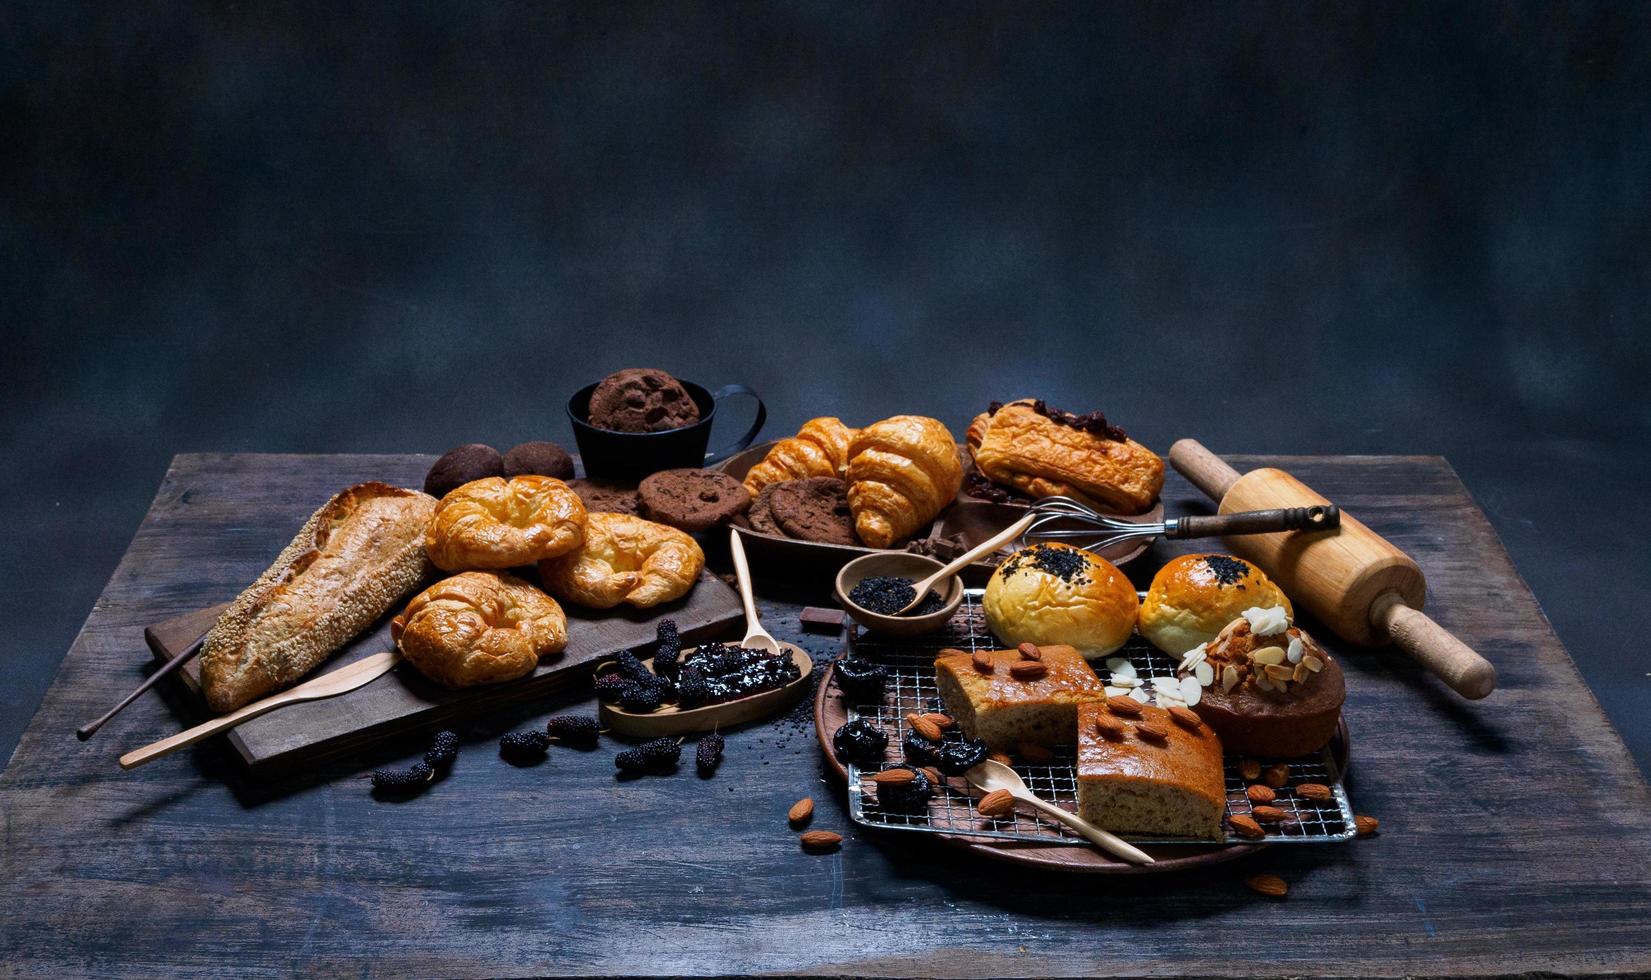 vista superior pão fresco passas marrom gergelim padaria feita de farinha de trigo comida caseira adequada para uma alimentação saudável no chão de mesa de madeira preto rústico fundo escuro foto